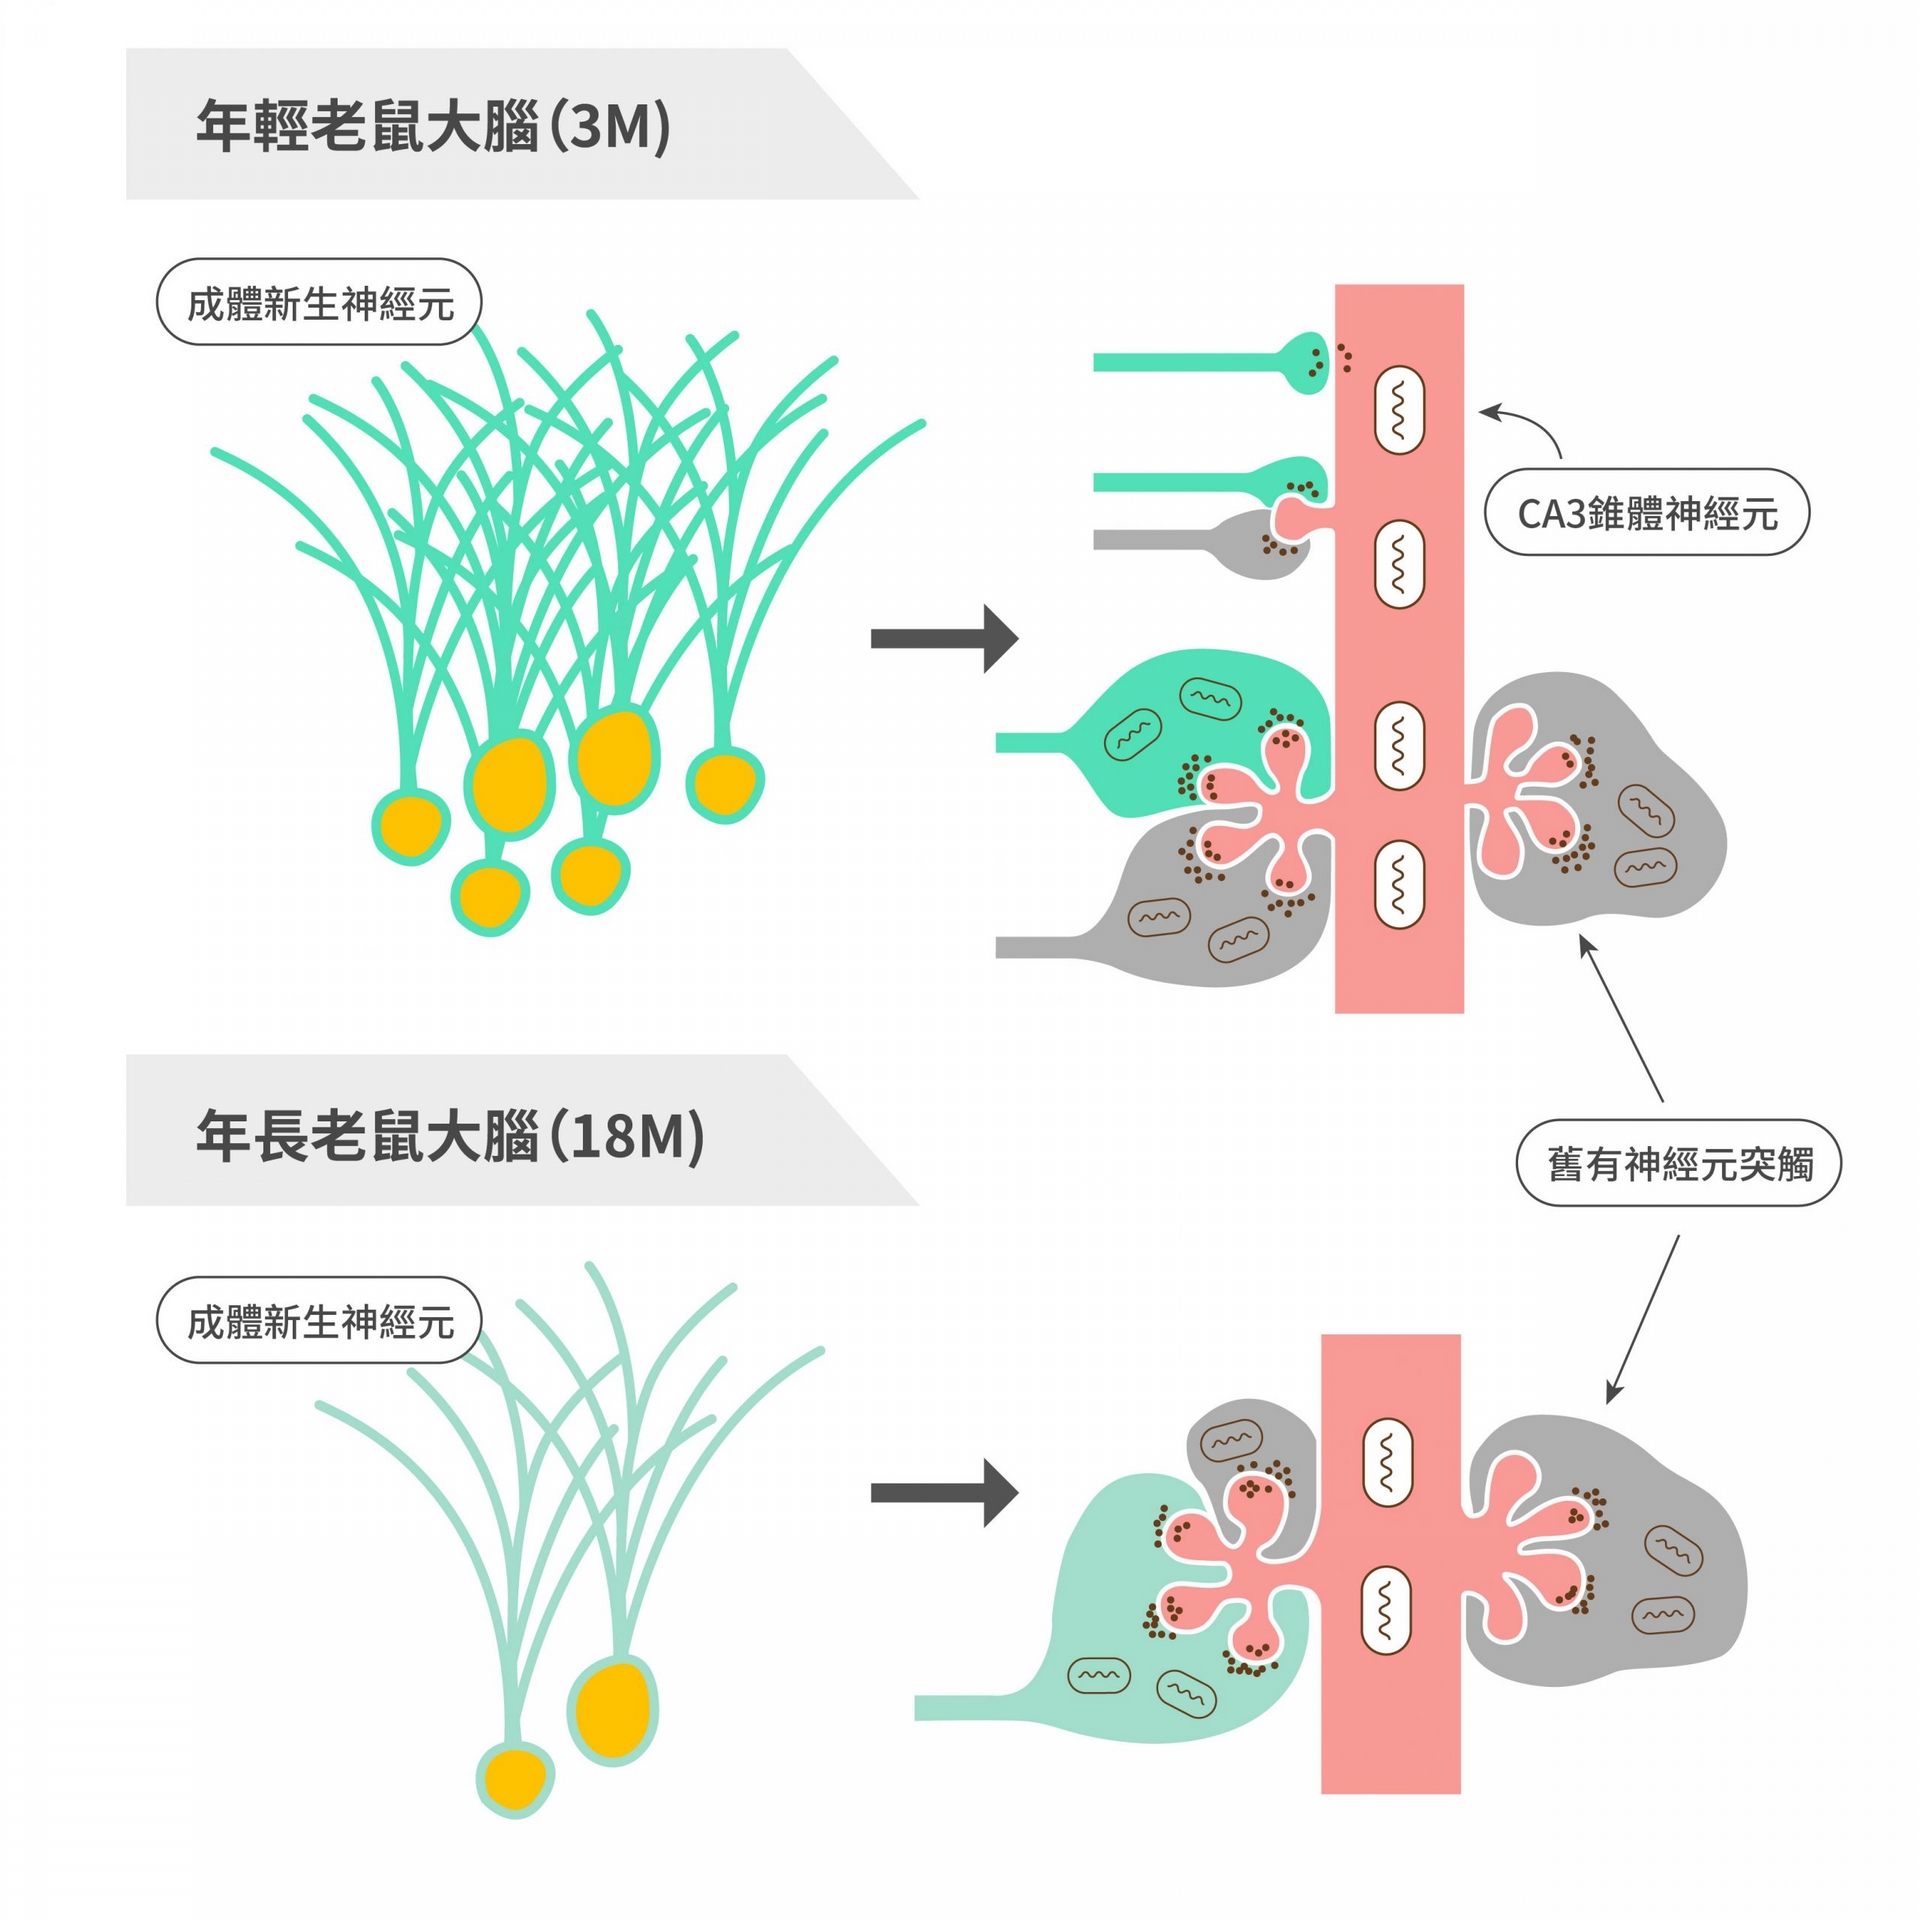 老鼠腦部齒狀回區域，新舊神經連結的示意圖。圖中左側像一束束小草的是成體新生神經元。圖中右側的接觸點，綠色為成體新生神經元軸突；灰色是舊有神經元軸突；紅色是 CA3 錐體神經元，這種神經元形成樹突的能力會隨年紀增長而下降。程淮榮團隊發現，年輕老鼠可以直接形成新的突觸，但是年長老鼠則只能排除舊有突觸，去掉舊有記憶，方能建立新連結。 圖｜研之有物（資料來源｜程淮榮）